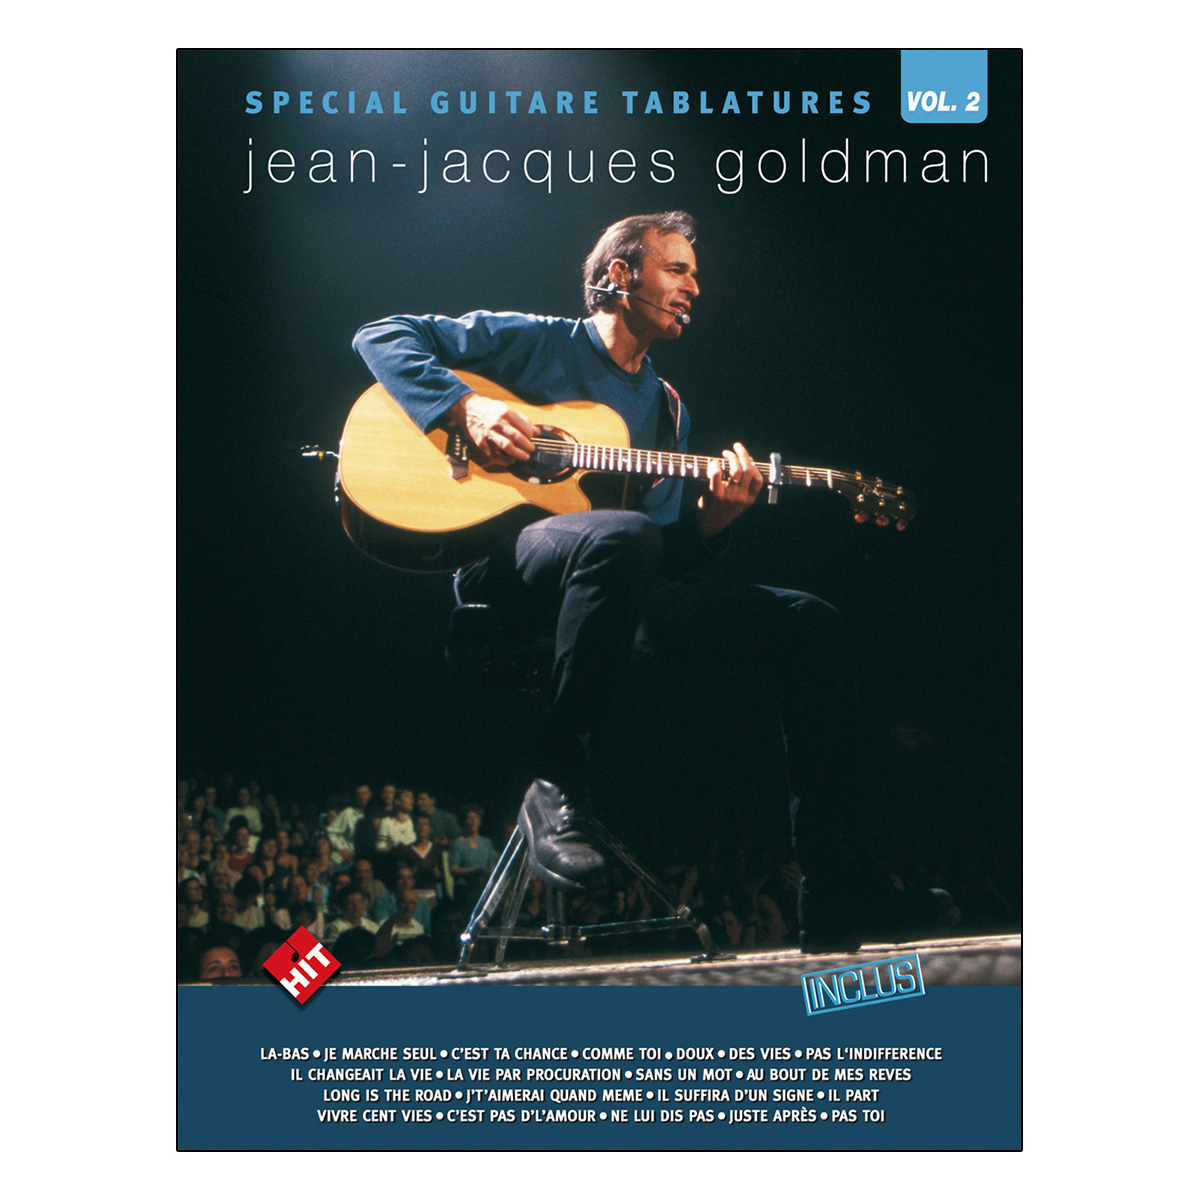 Spécial guitare tablatures vol.2 Jean-Jacques Goldman